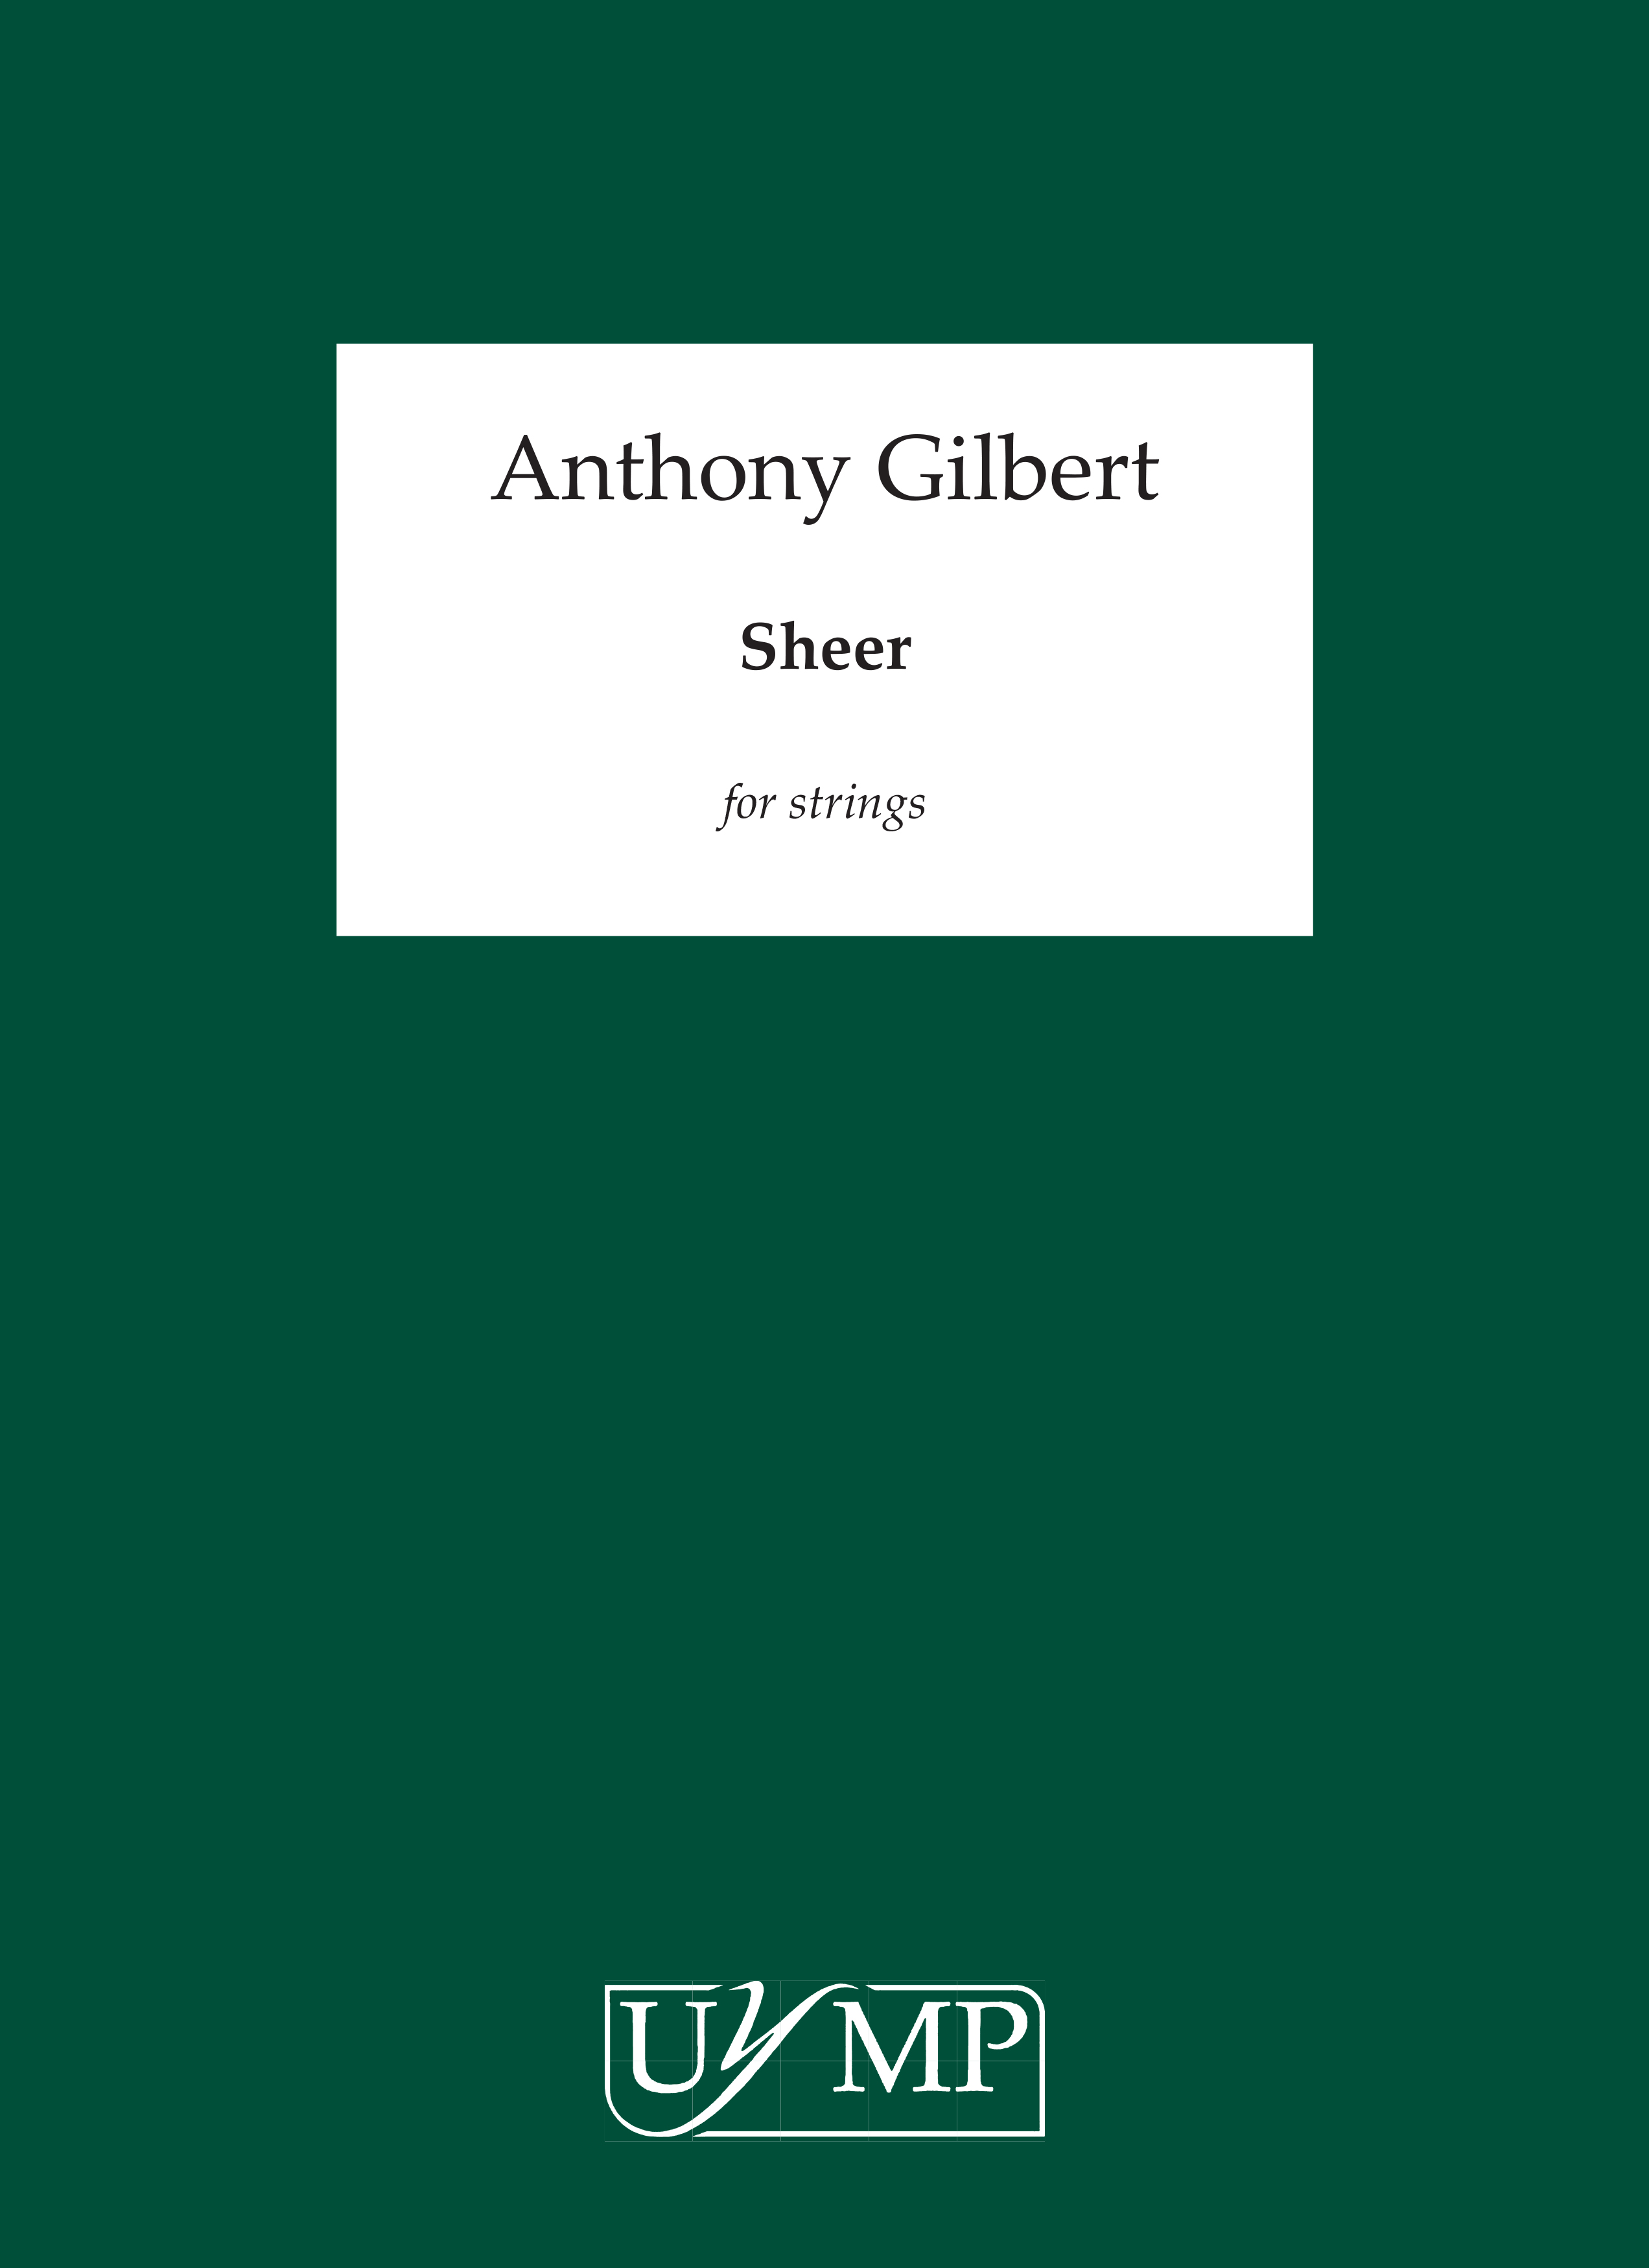 Anthony Gilbert: Sheer